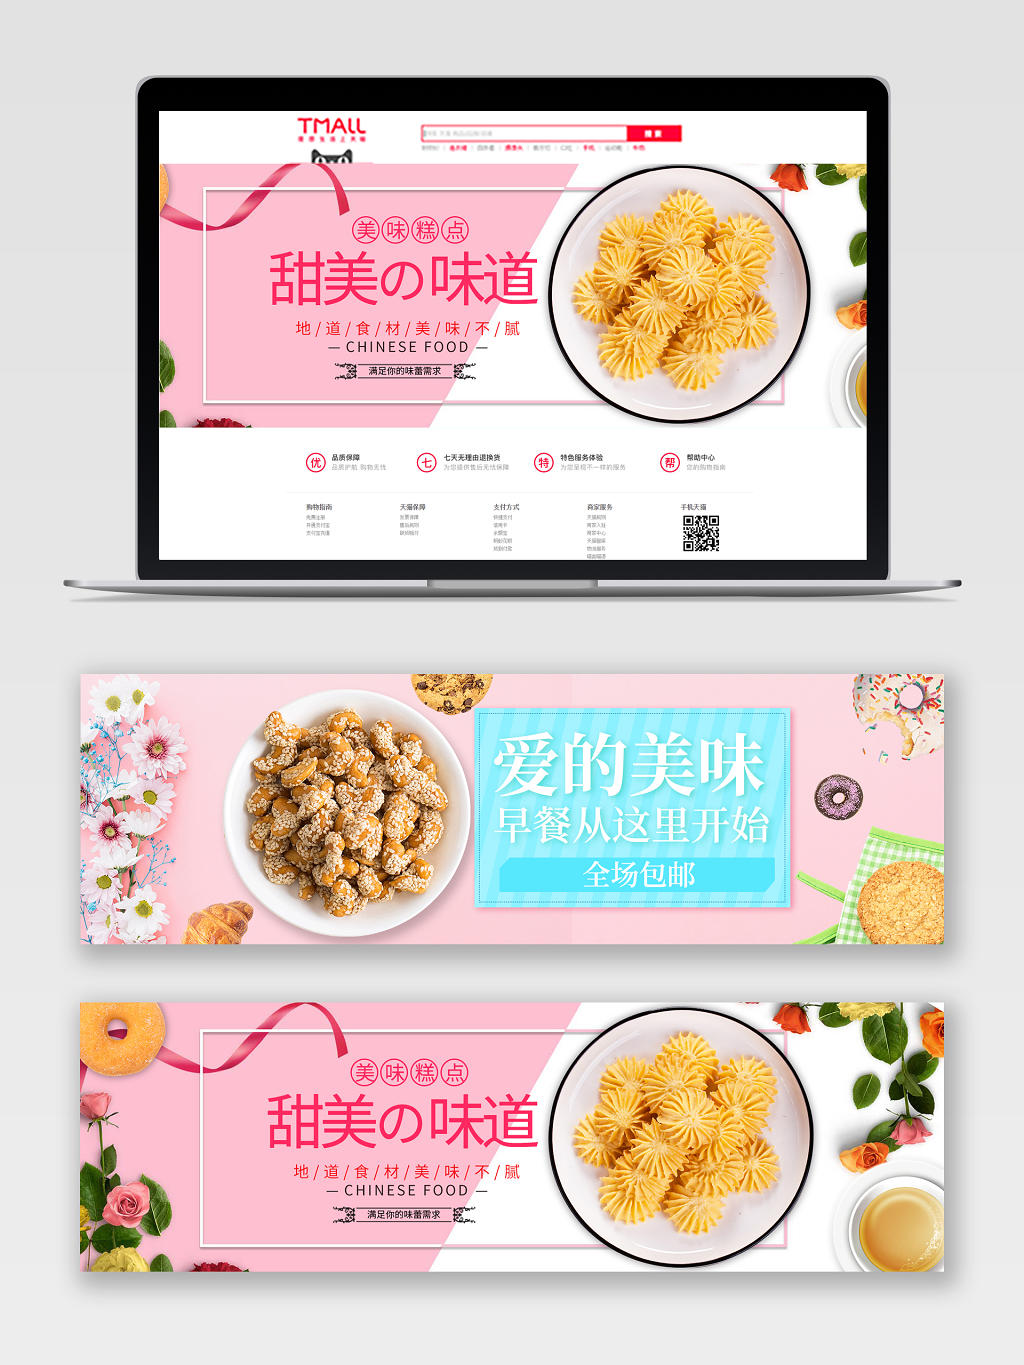 粉色背景零食美味糕点促销电商banner海报设计